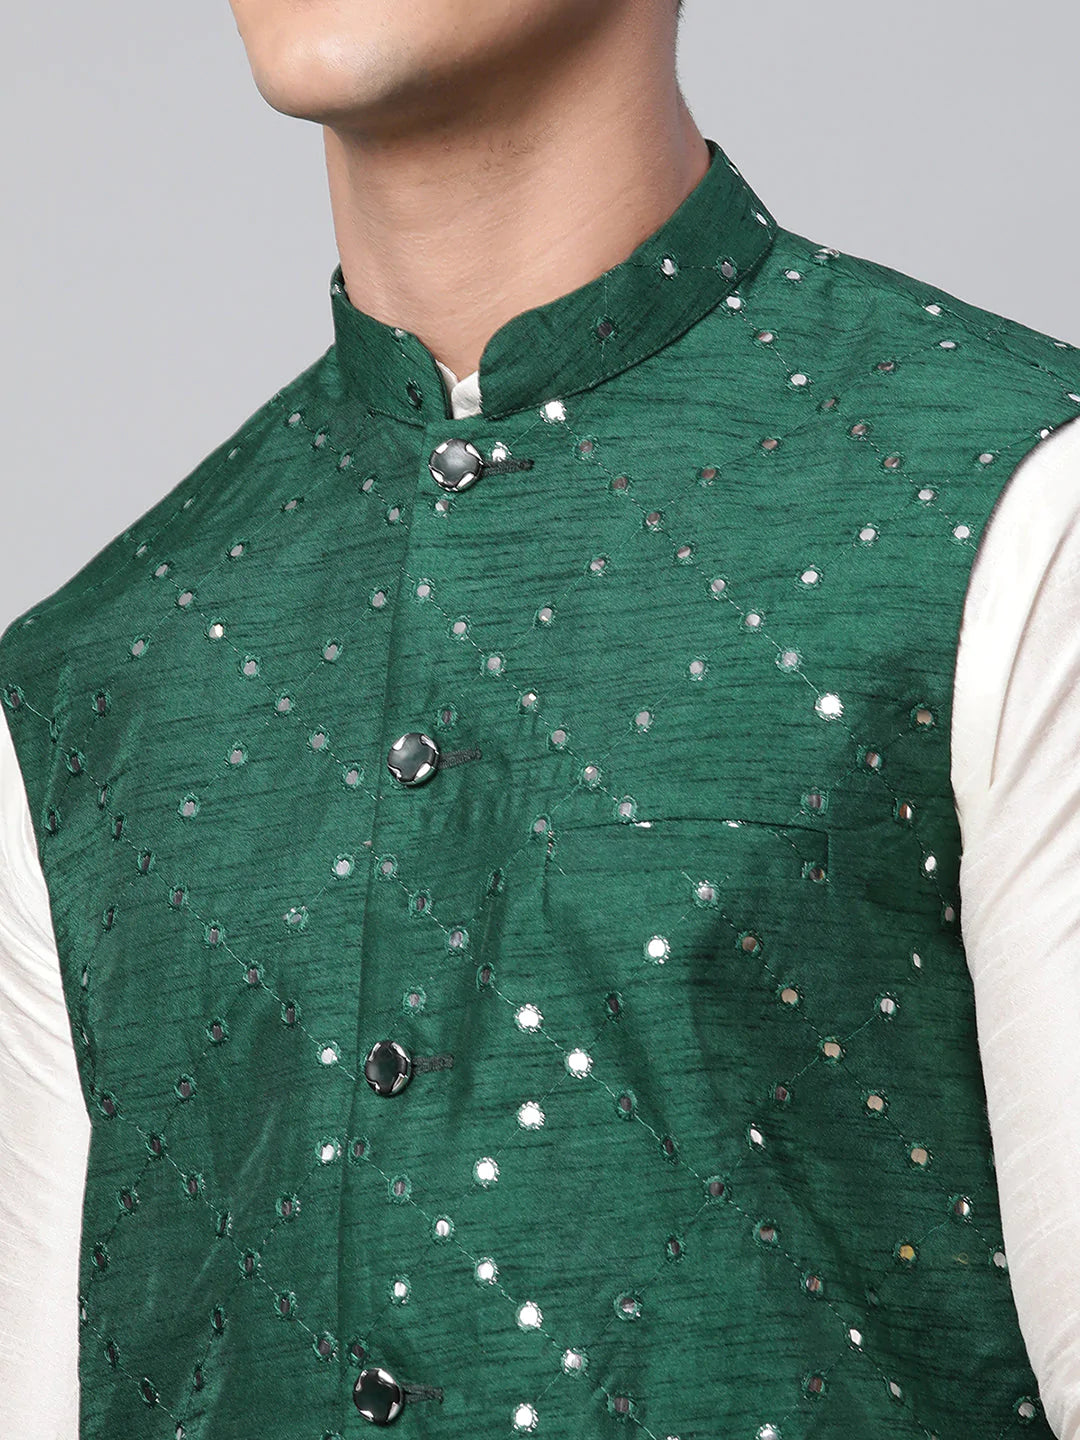 Men's Green Mirror Work Embroidered Nehru Jacket( JOWC 4040 Green )